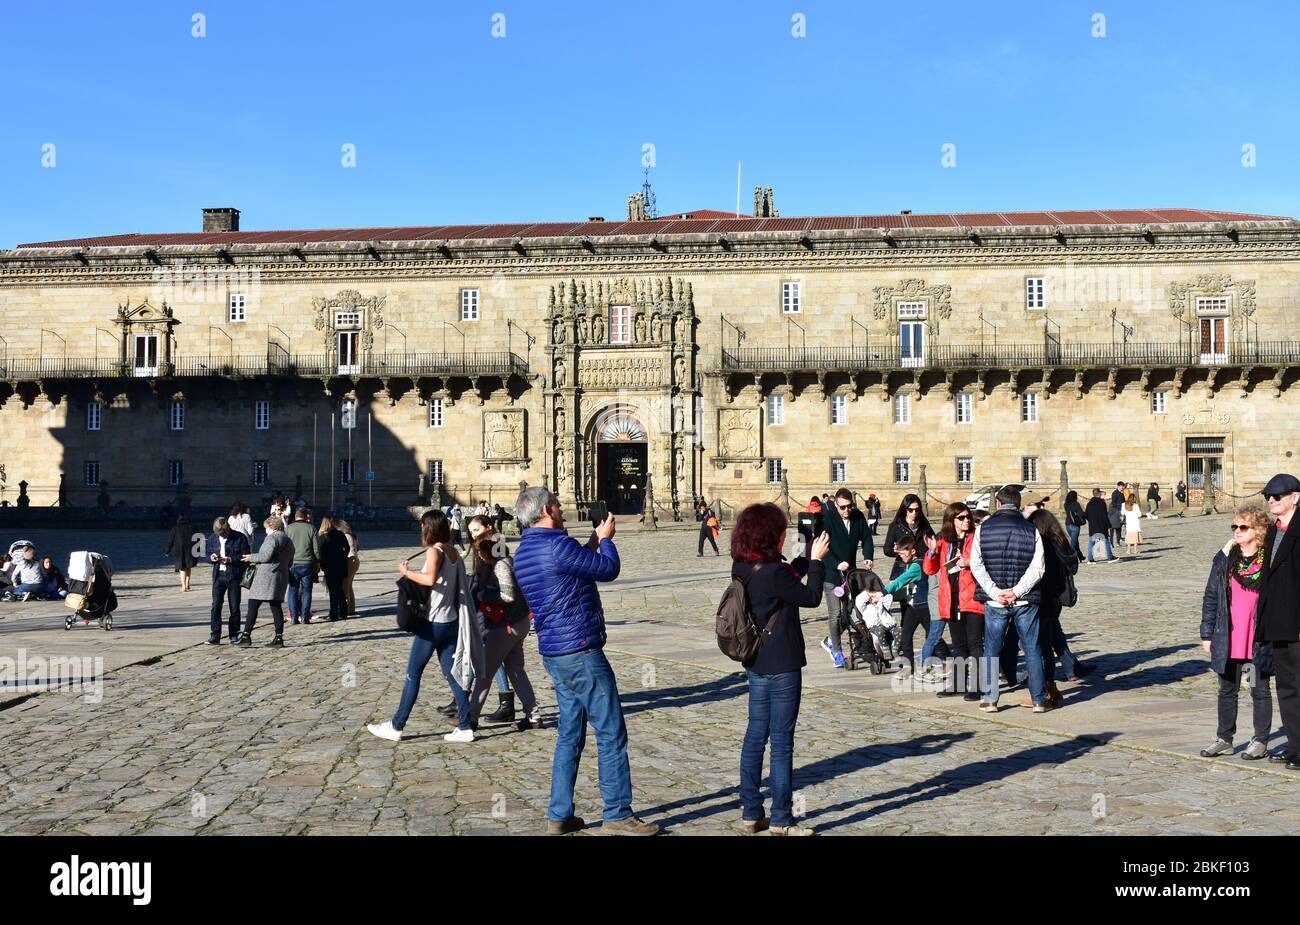 Touristen, die Fotos machen in Praza do Obradoiro mit Hostal de los Reyes Catolicos Gebäude. Santiago de Compostela, Spanien. 29. Dezember 2019. Stockfoto